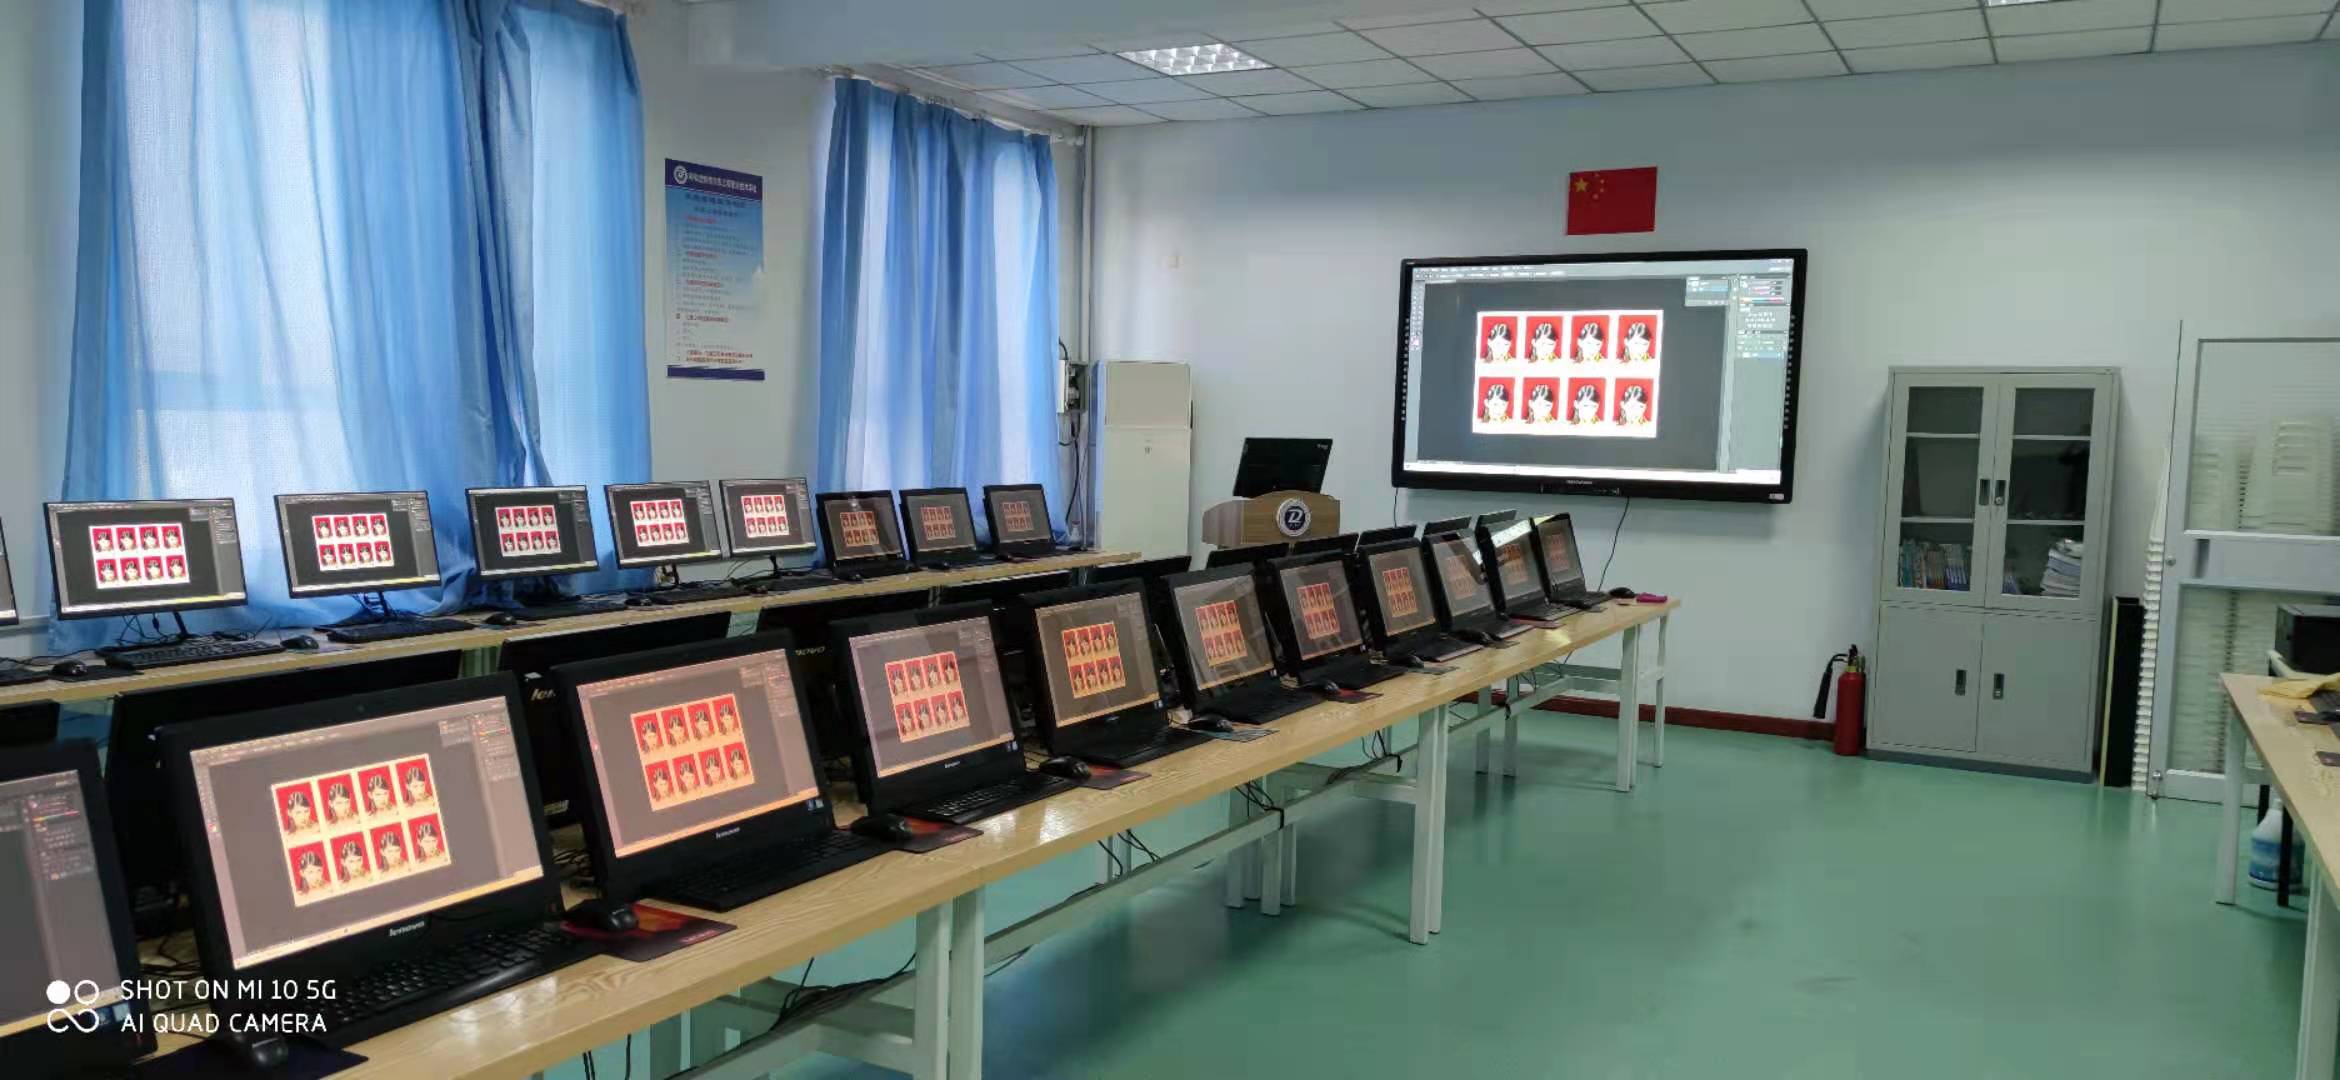 计算机实训课堂的同屏教学模式